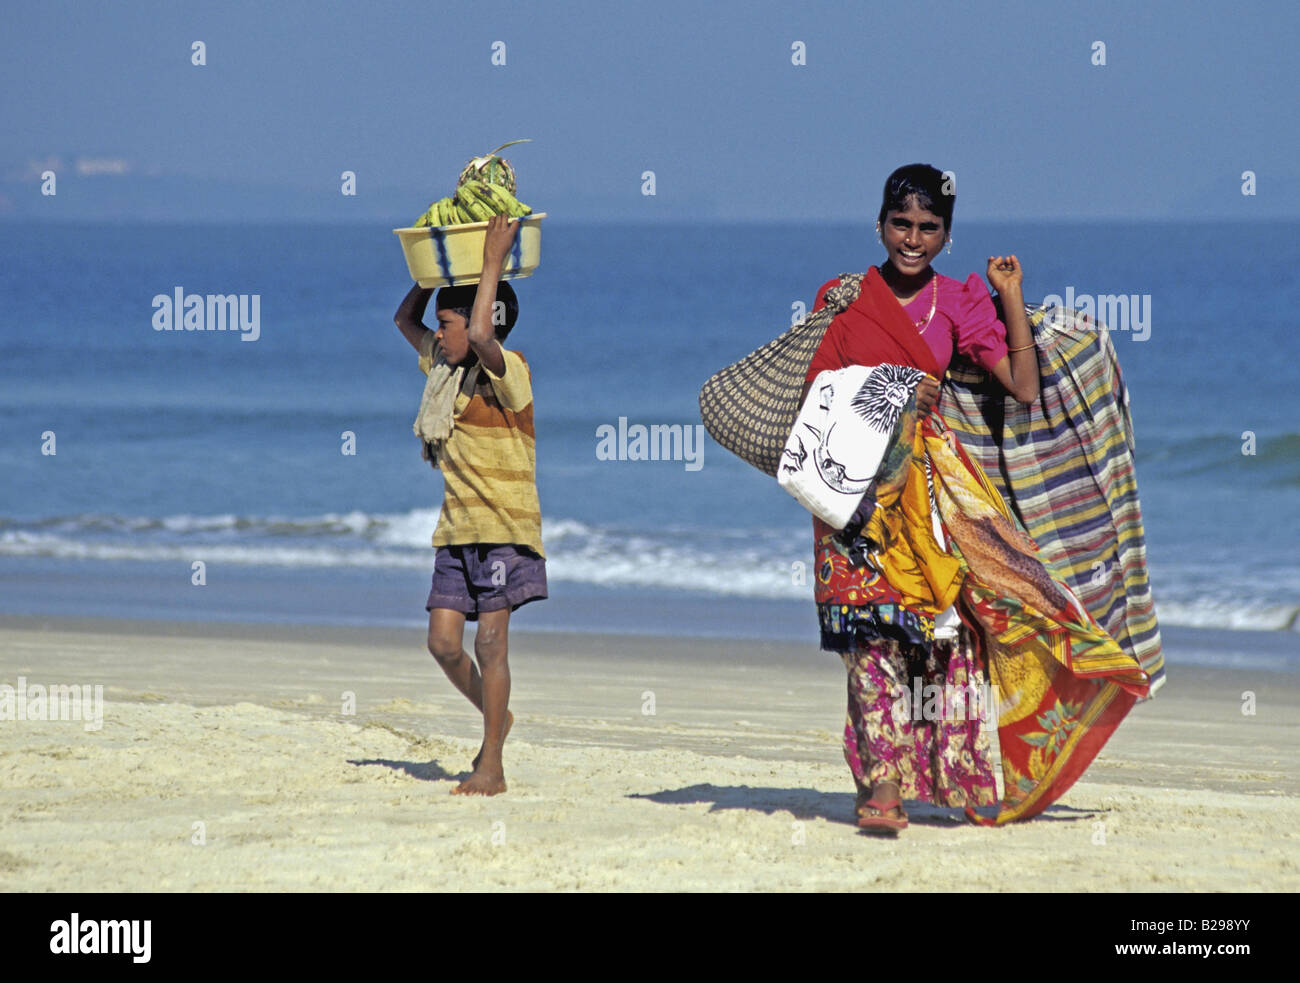 Vendeur Beach Goa State India Date 15062008 Ref ZB548 1155730034 CRÉDIT OBLIGATOIRE Sem - Allemand Photos du Monde Banque D'Images